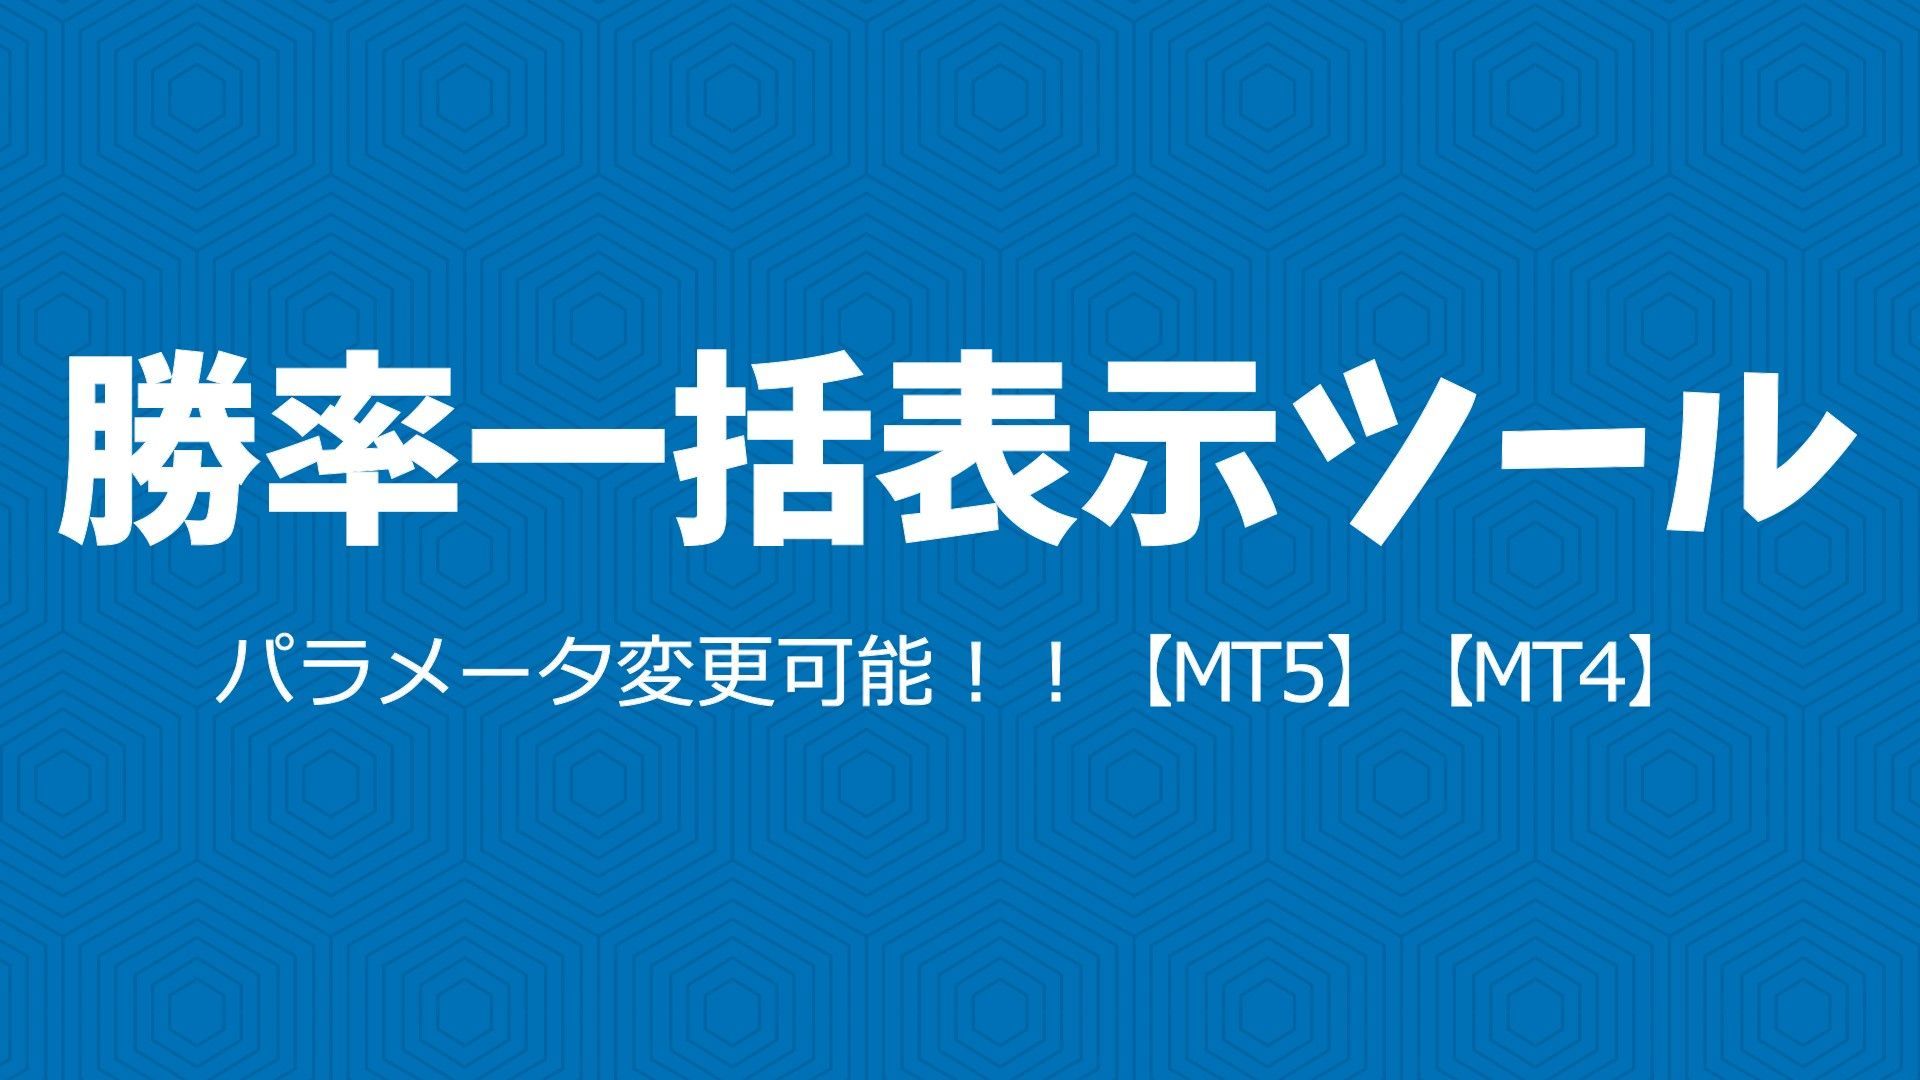 【MT4】【MT5】勝率計算ツールinCSVファイル インジケーター・電子書籍